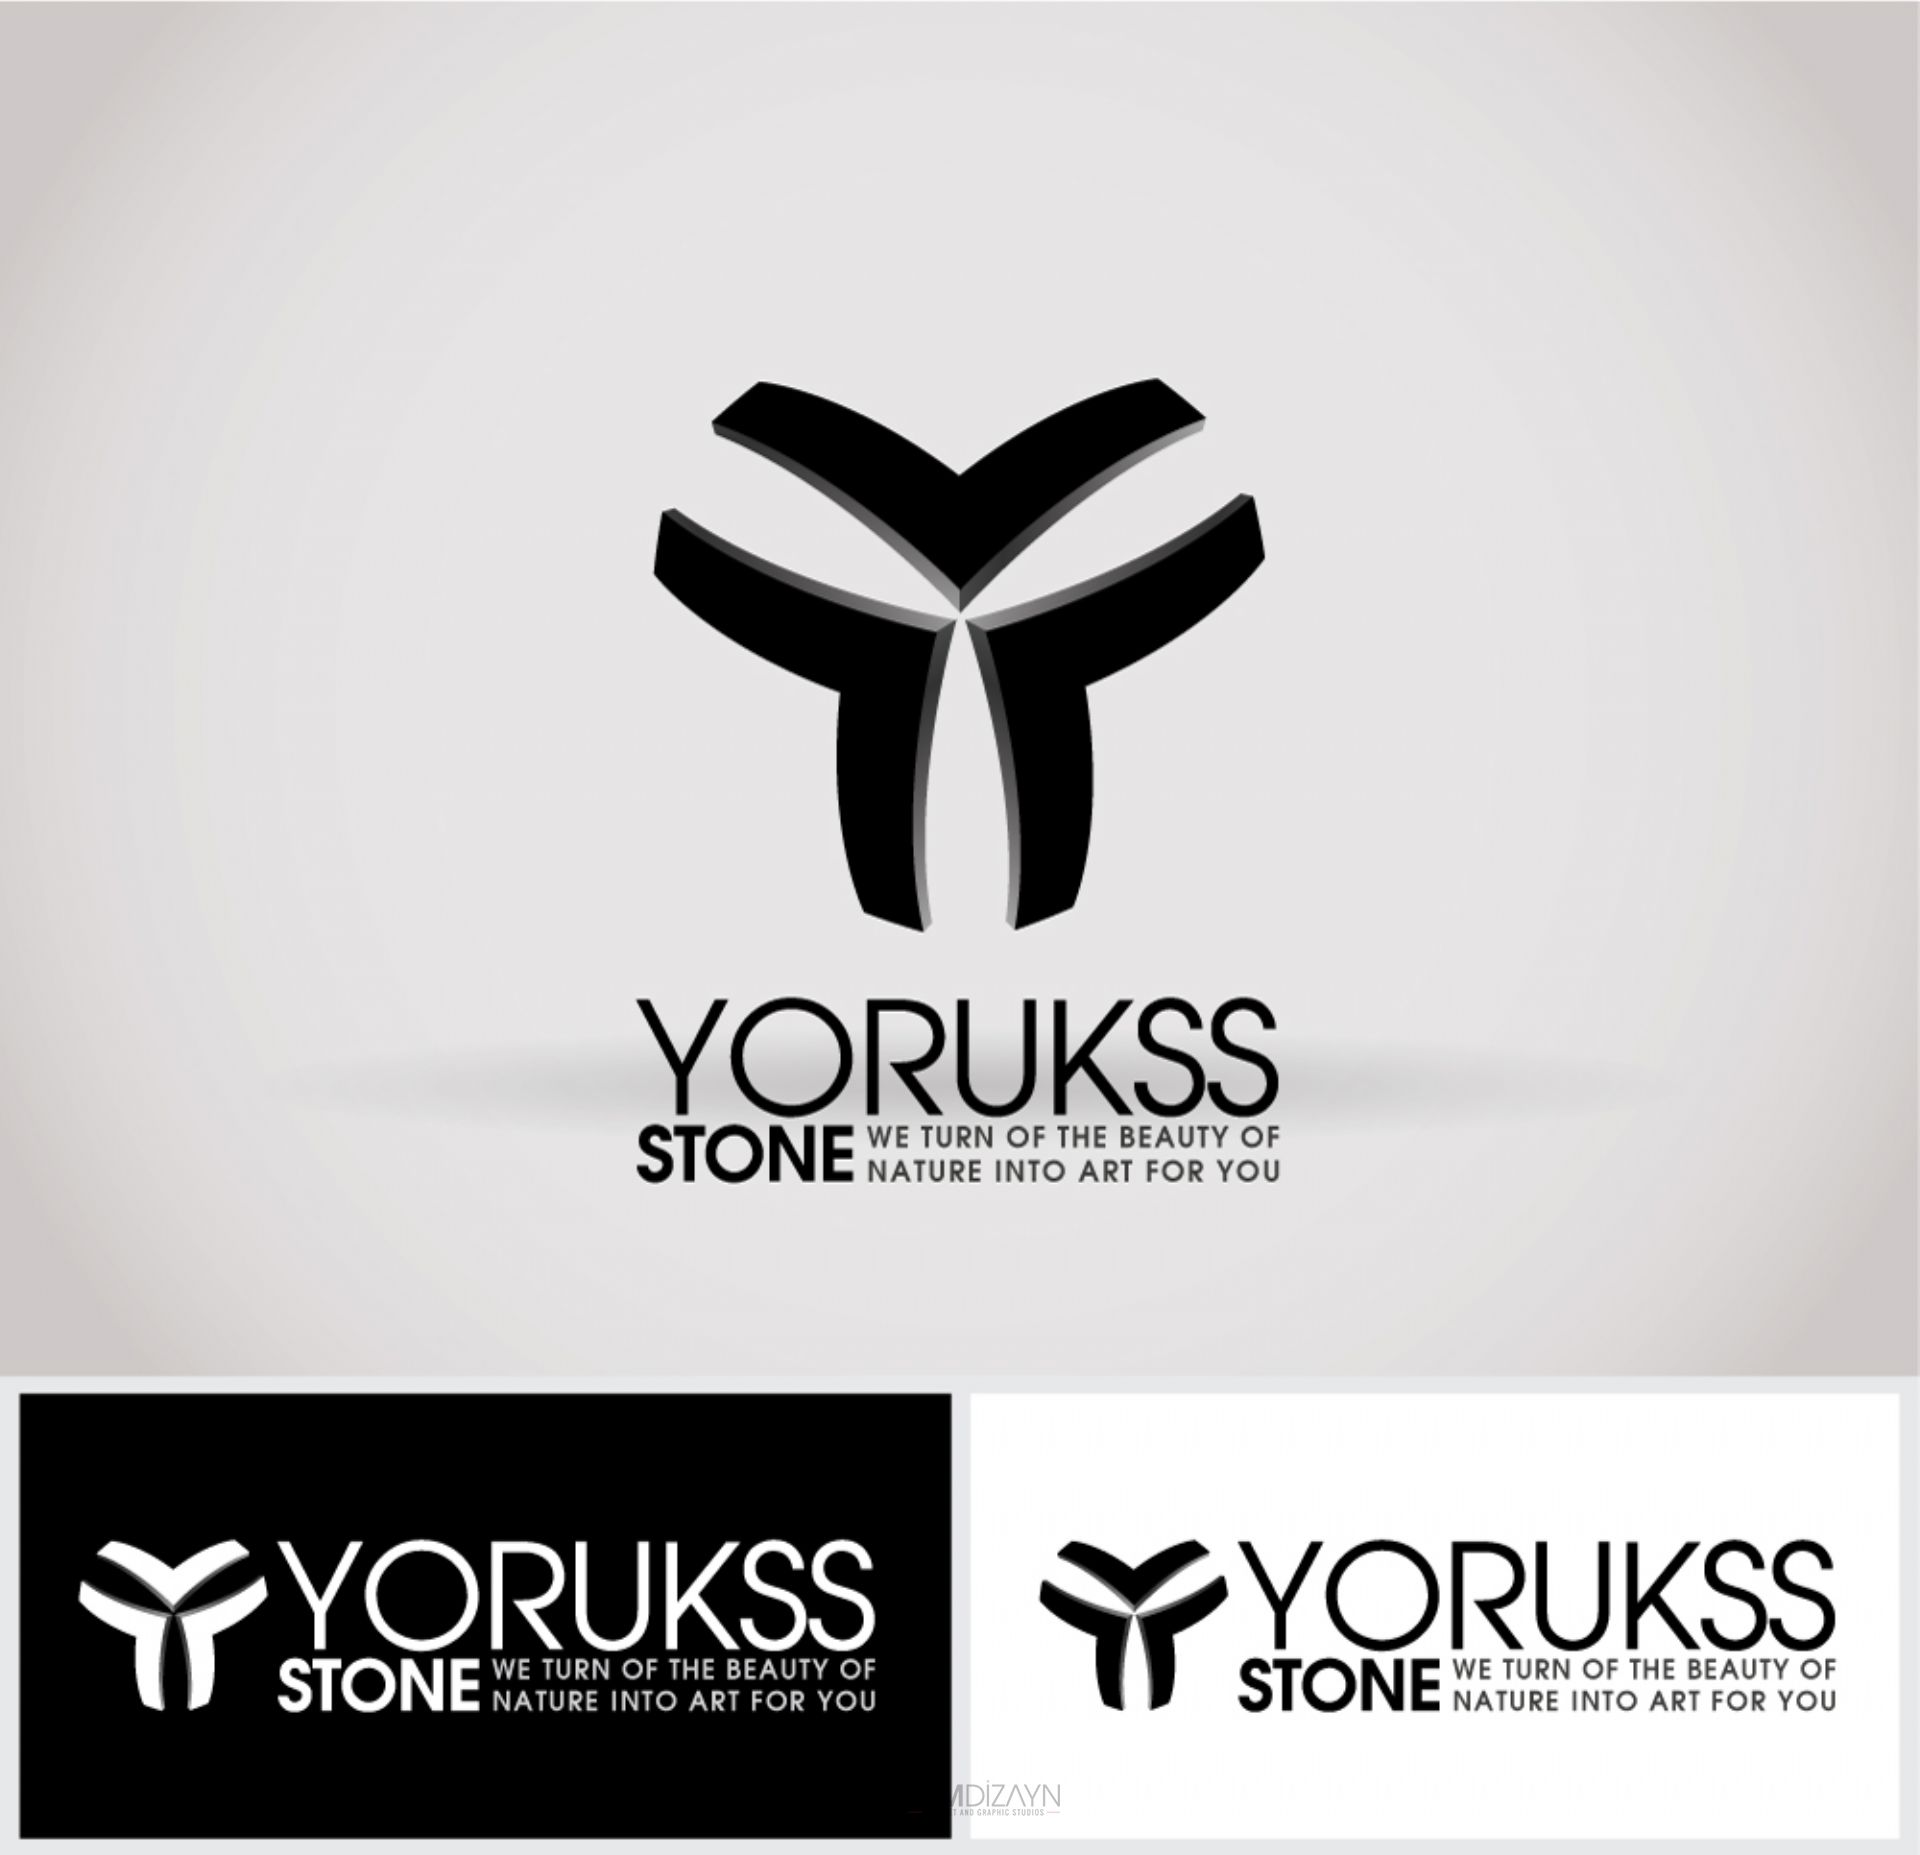 Yorukss Stone | Corporate identity